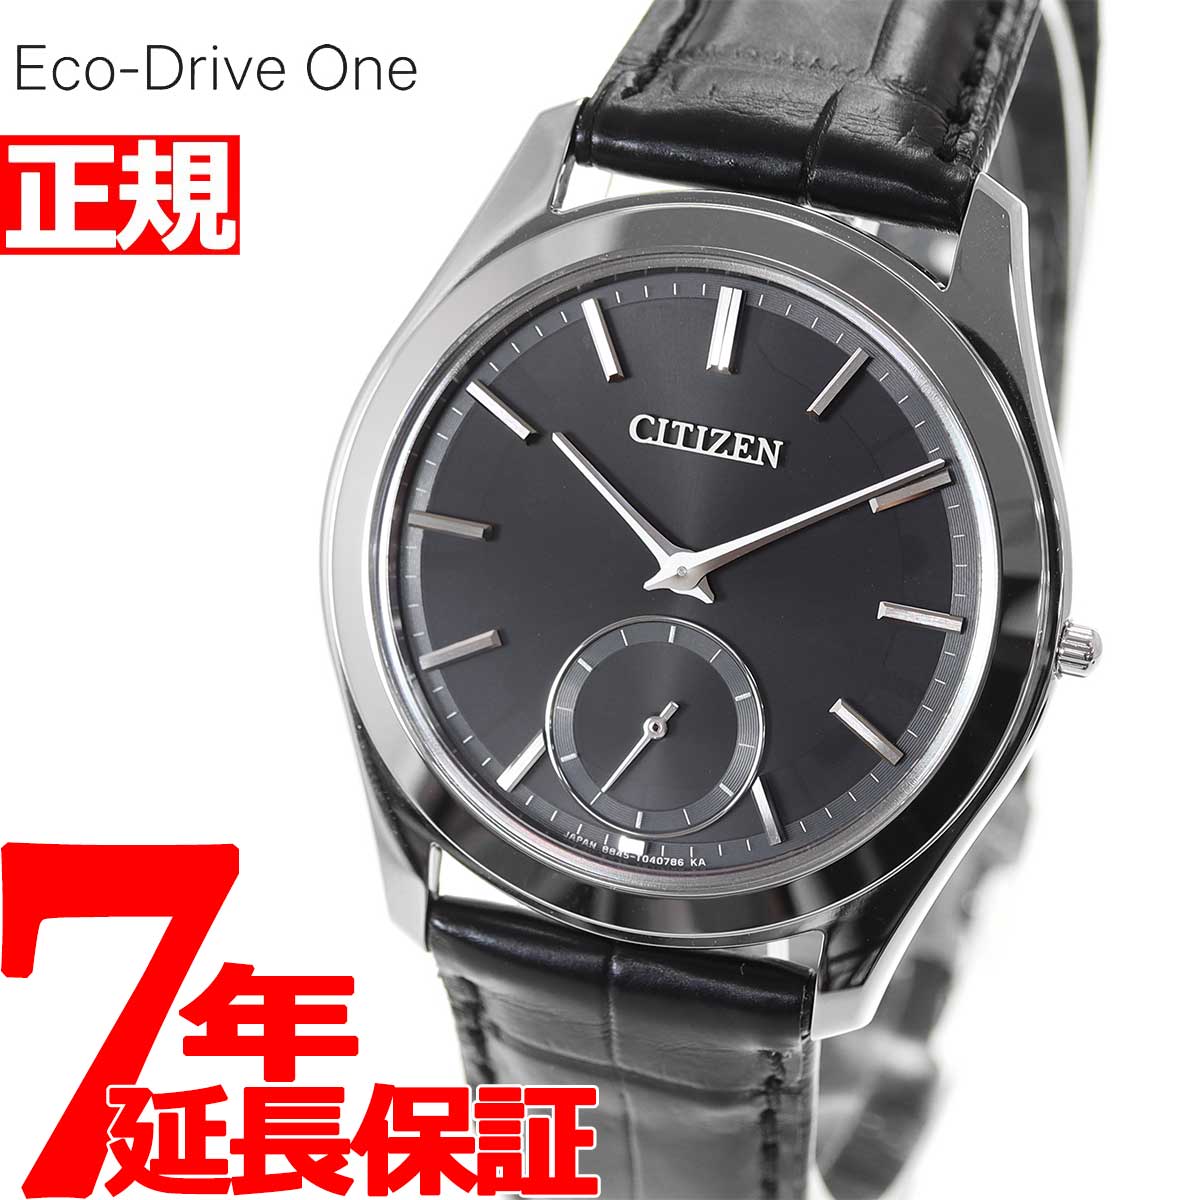 シチズン CITIZEN 腕時計 メンズ AQ5010-01E エコ・ドライブ ワン コンフォートライン Eco-Drive One Comfort-Line Eco-Drive One エコ・ドライブ（8845） ブラックxブラック アナログ表示